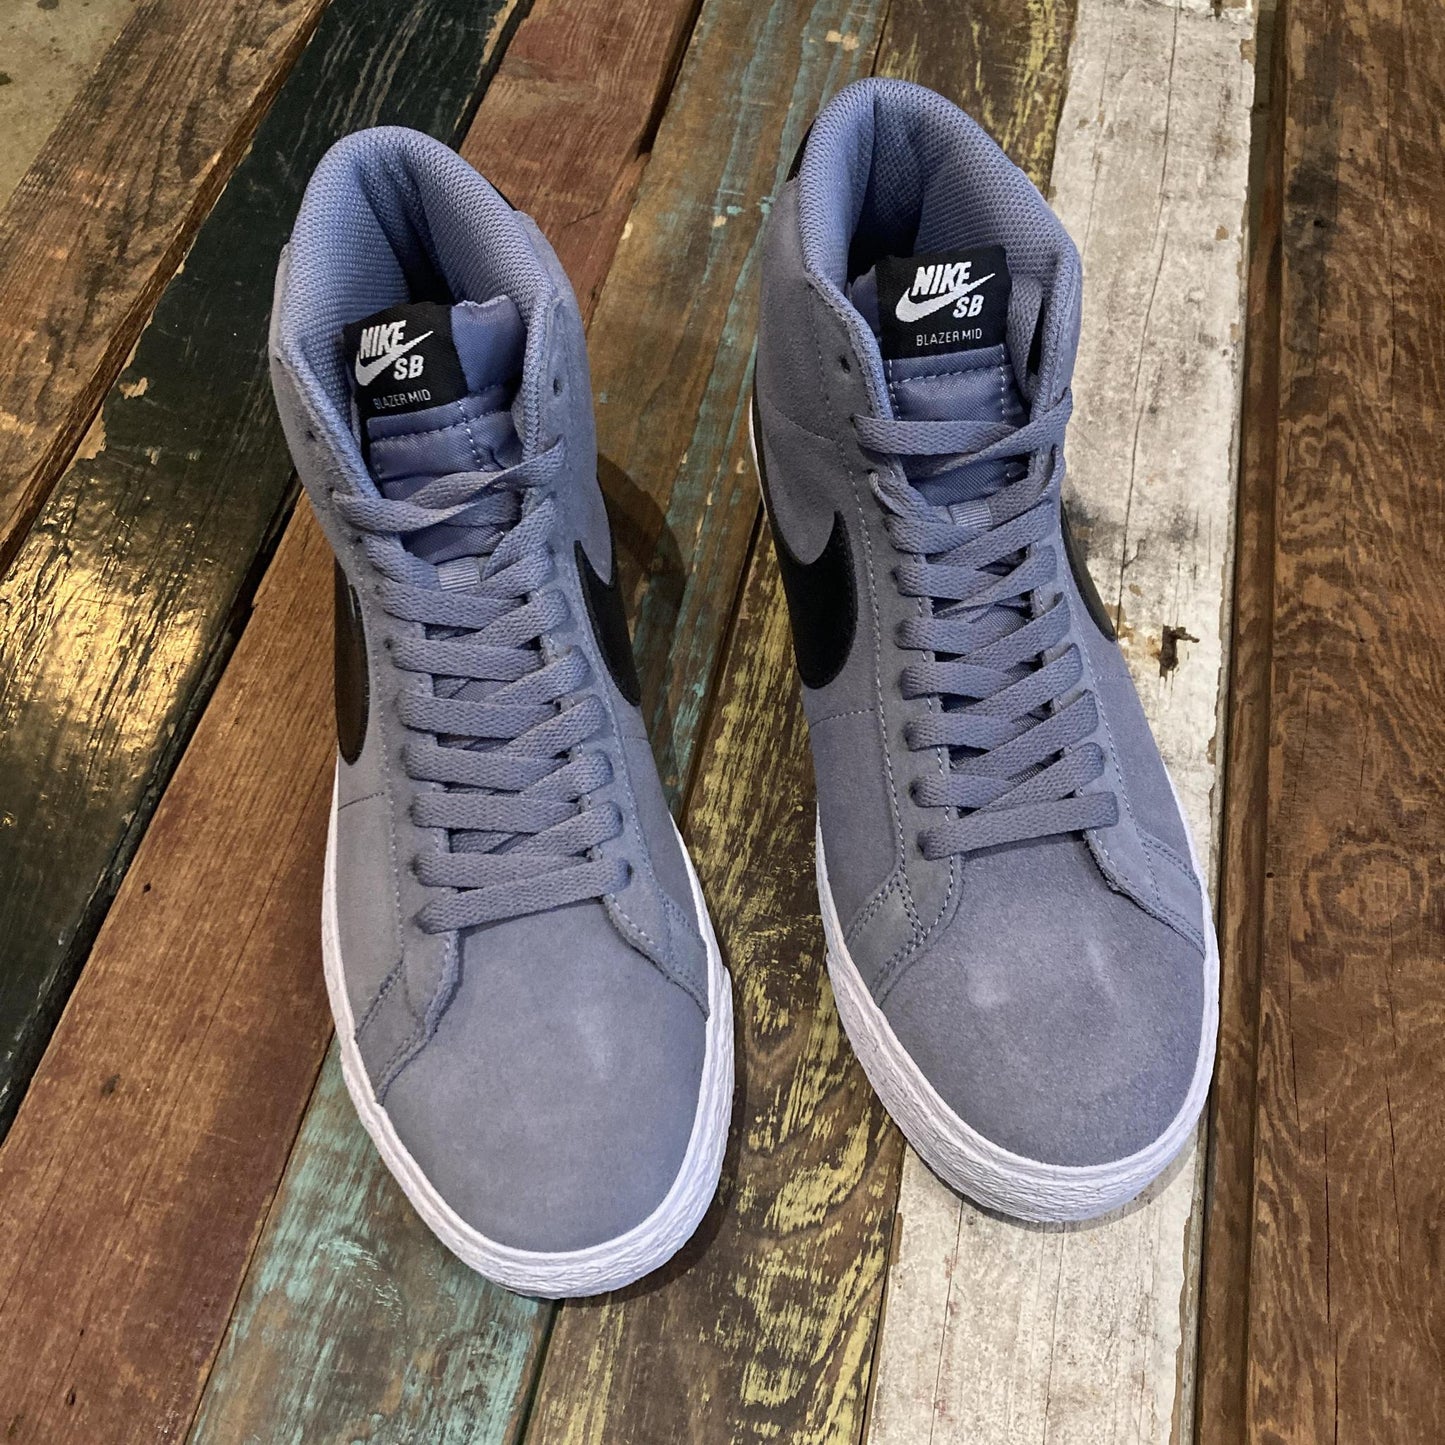 Nike SB Blazer Mid (Blue/Grey/Obsidian) FD0731-401